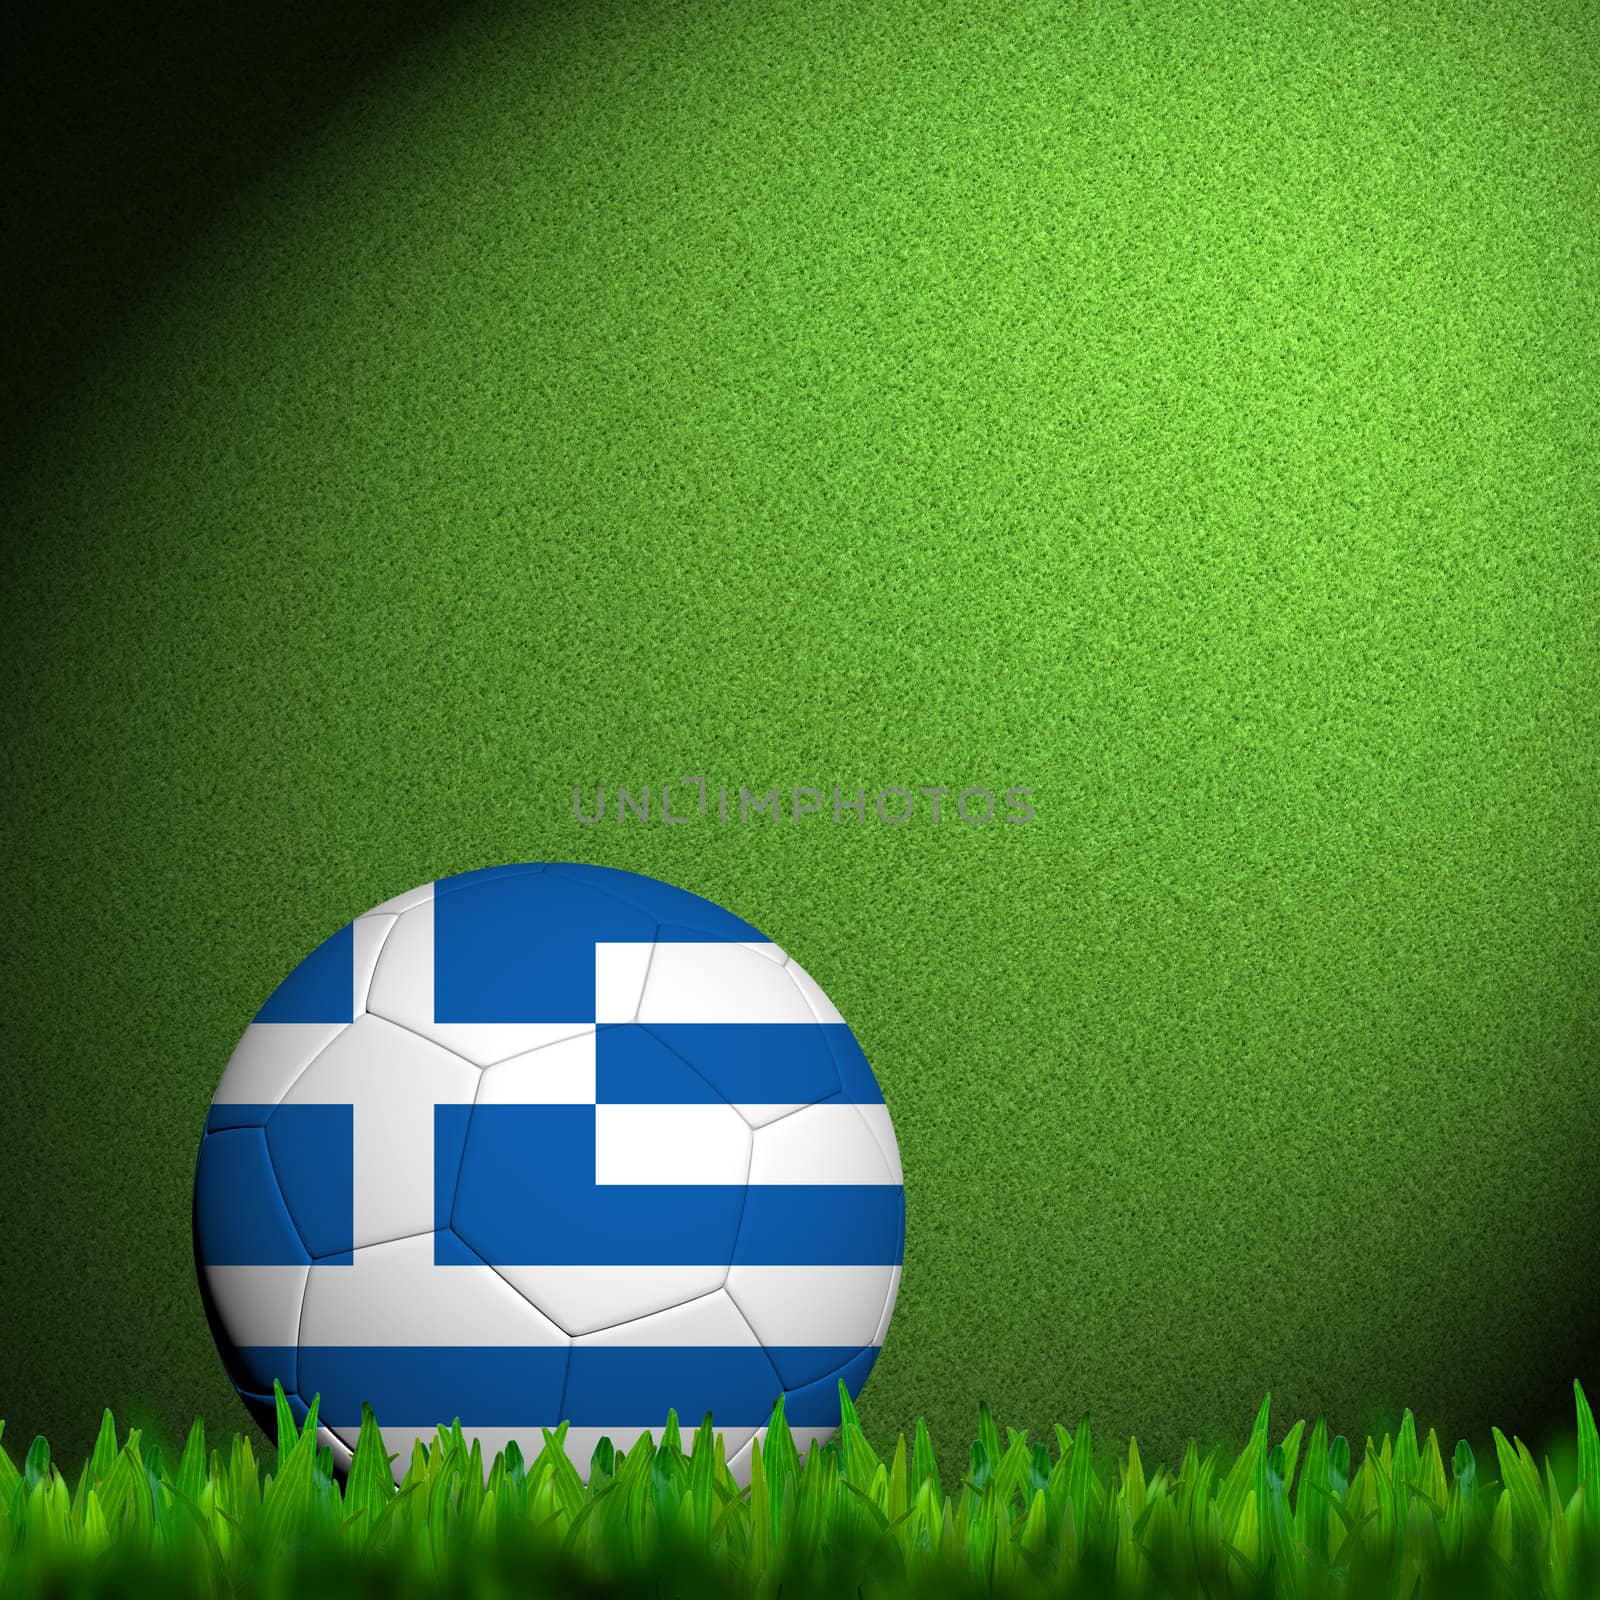 3D Football Greece Flag Patter in green grass